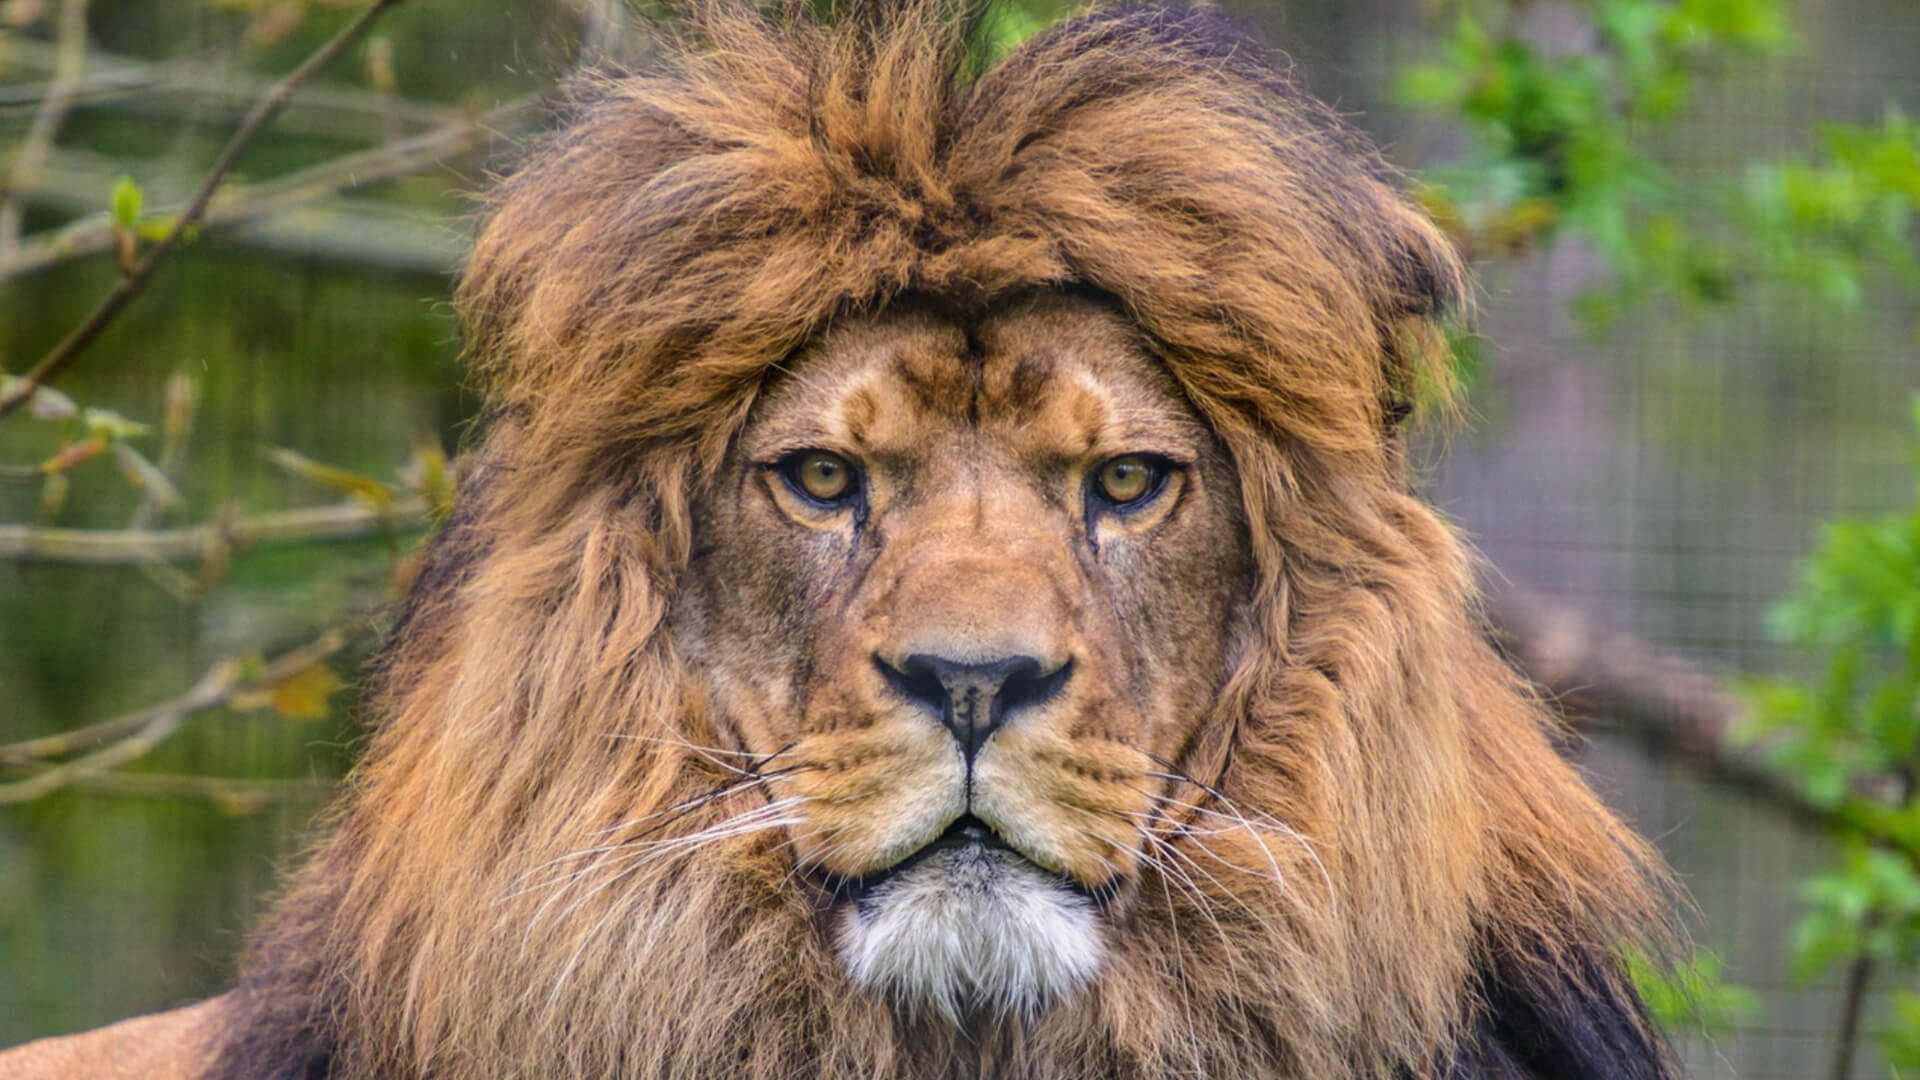 Фото лев с добычей